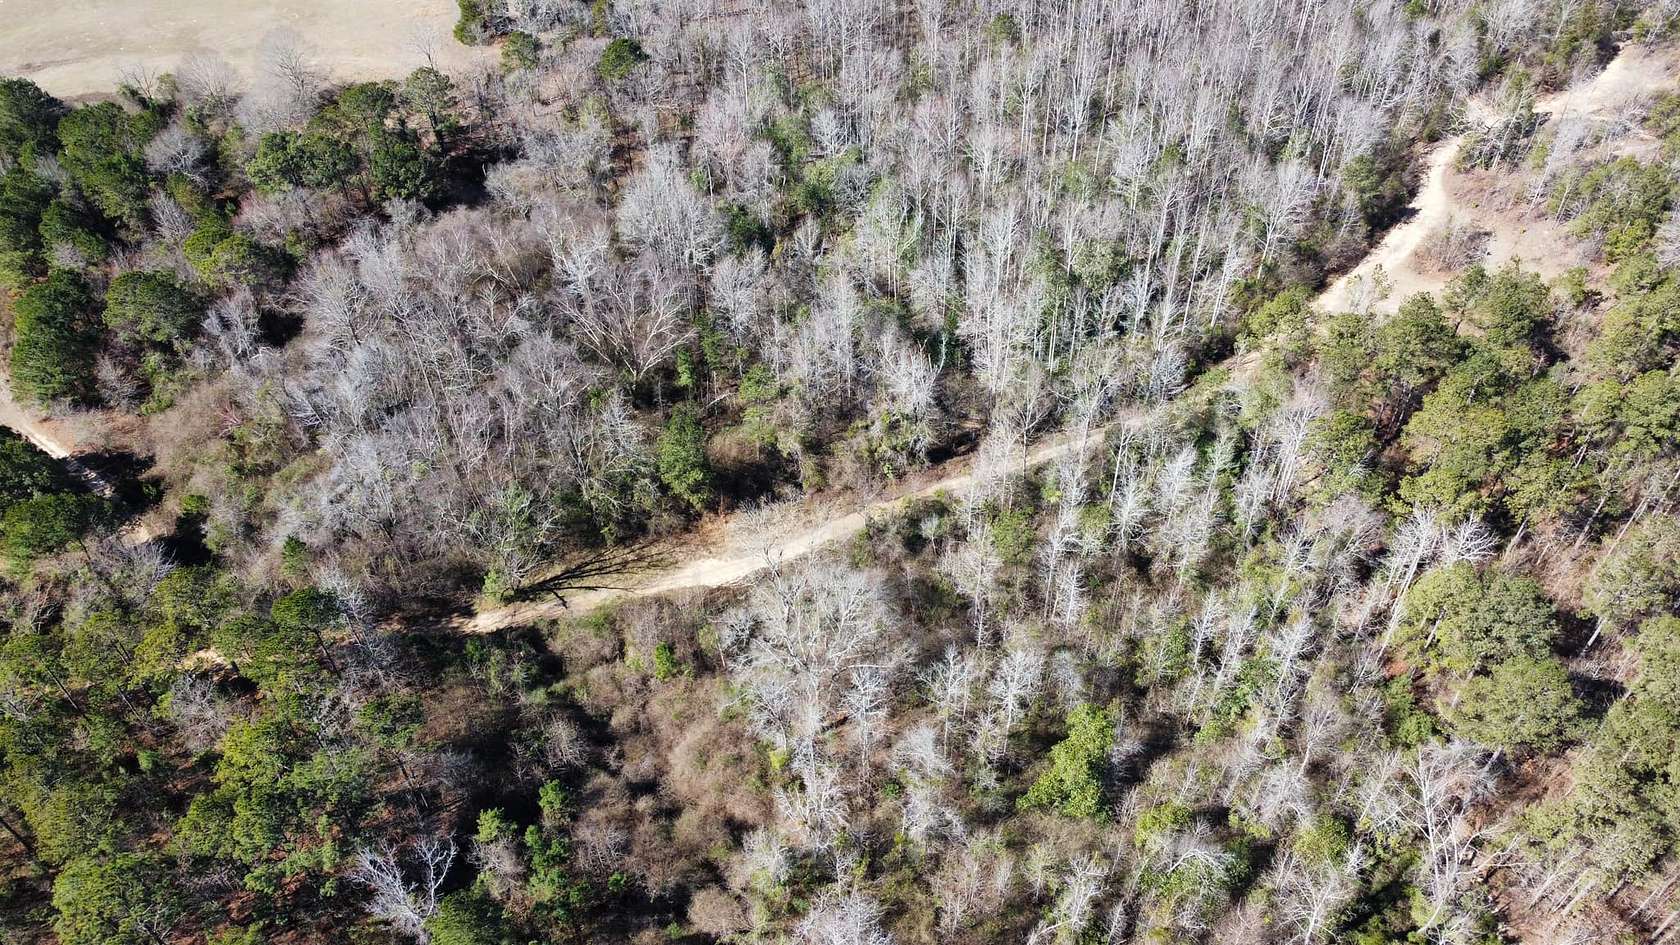 10 Acres of Improved Land for Sale in Salem, Alabama